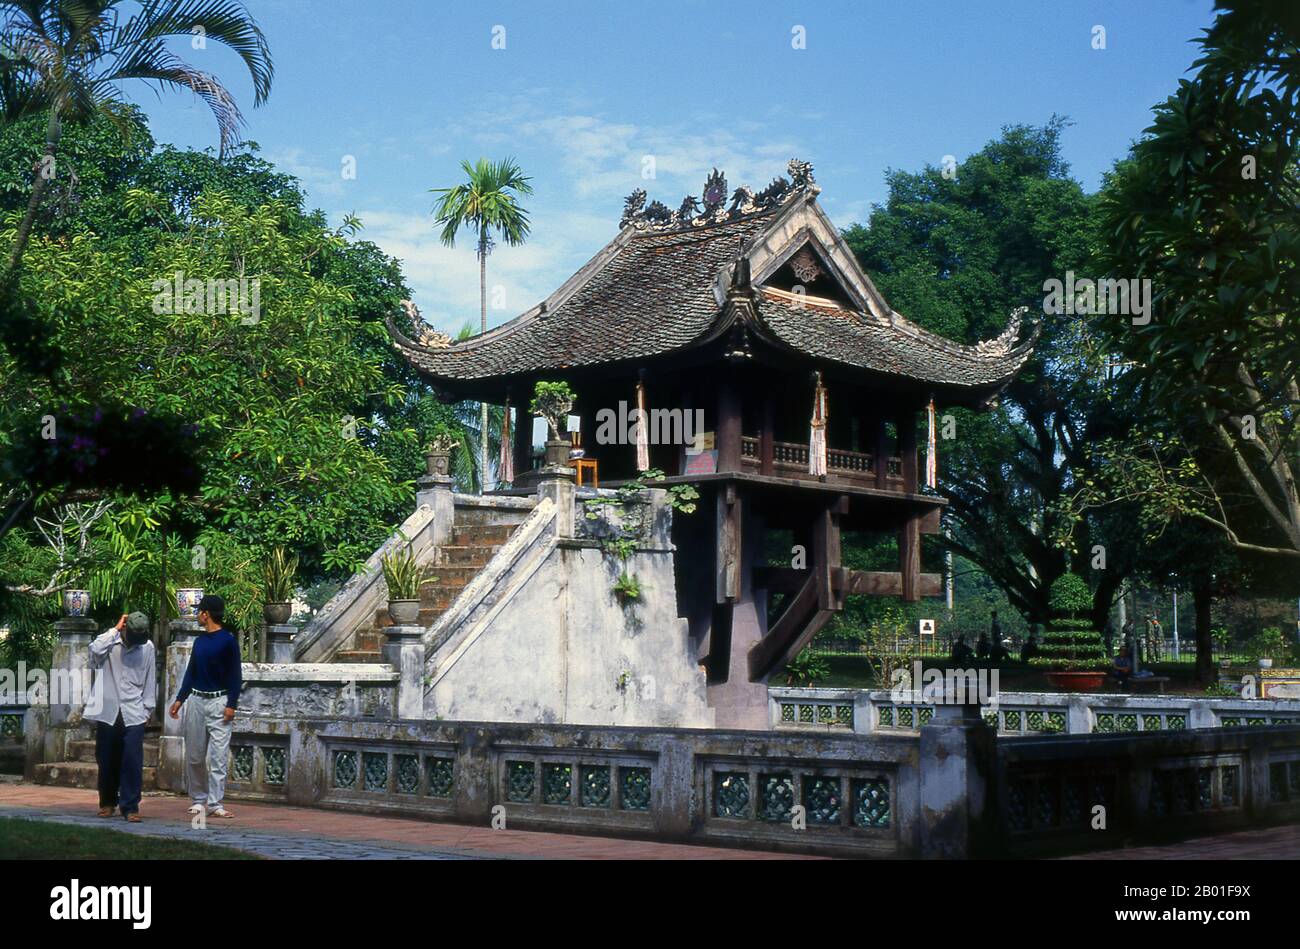 Vietnam: Cuna Chua Mot o Pagoda de un pilar, Templo Dien Huu, Hanoi. La Pagoda de un pilar o Cuna Chua Mot es un icono importante para la ciudad de Hanoi. Situado dentro del diminuto templo de Dien Huu, que también data del siglo 11th, Chua Mot Cot es una pagoda de madera construida, como su nombre indica, en un solo pilar de piedra que se levanta en un simple pero elegante estanque de loto. King Ly Thai Tong (1000-1054) construyó originalmente el Templo Dien Huu y la Cuna Chua Mot en 1049. Según la leyenda, el rey, sin tener hijo, fue visitado en sus sueños por la Diosa de la Misericordia Quan Am, que estaba sentada sobre una flor de loto. Foto de stock